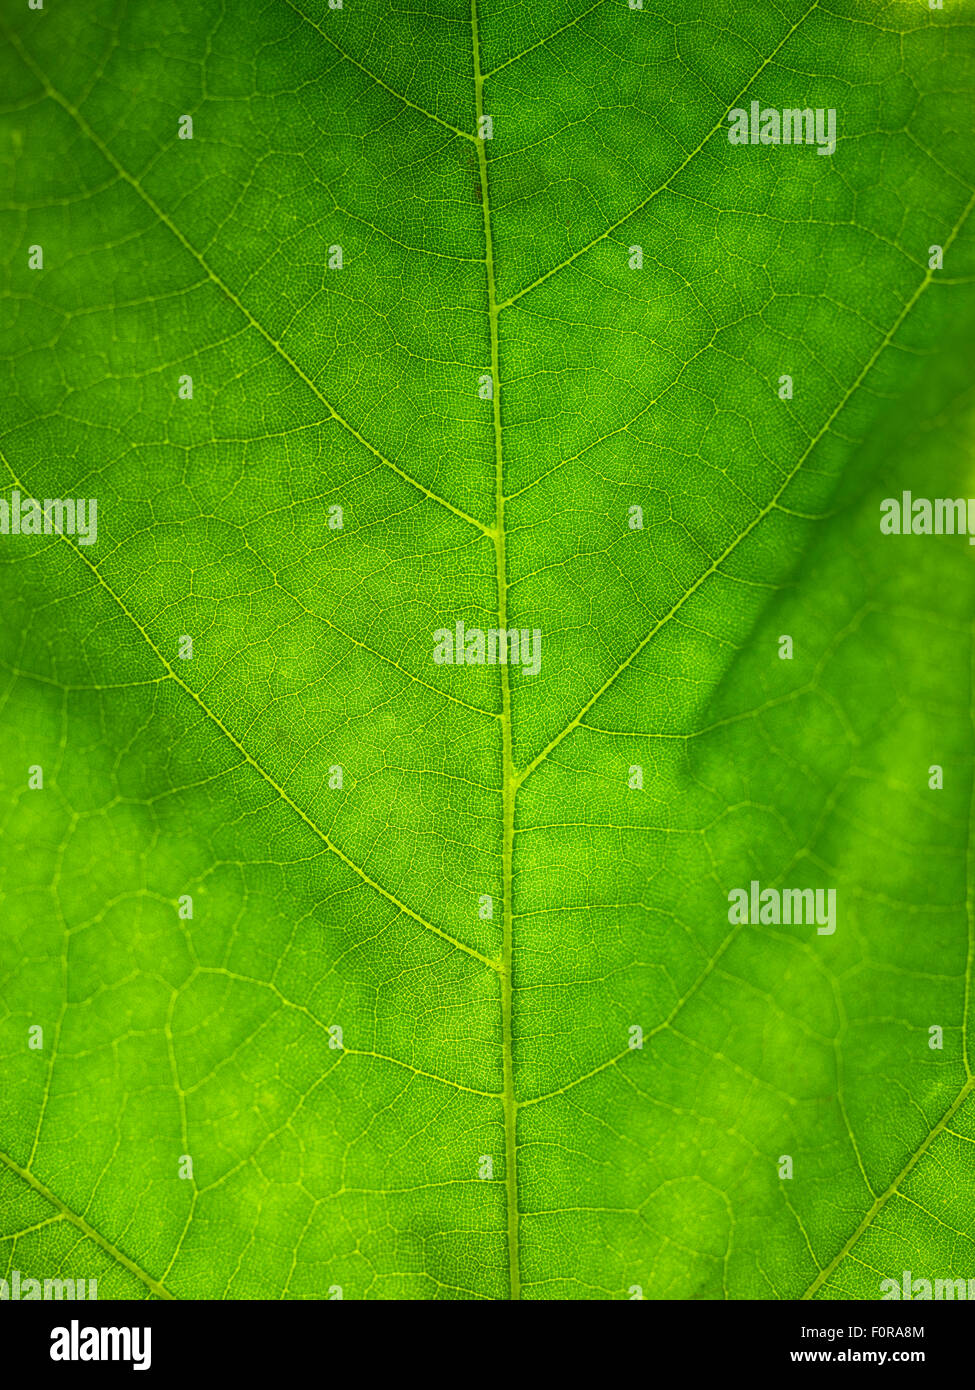 Gros plan d'une feuille verte, rétro-éclairé et full frame idéal pour une image d'arrière-plan Banque D'Images